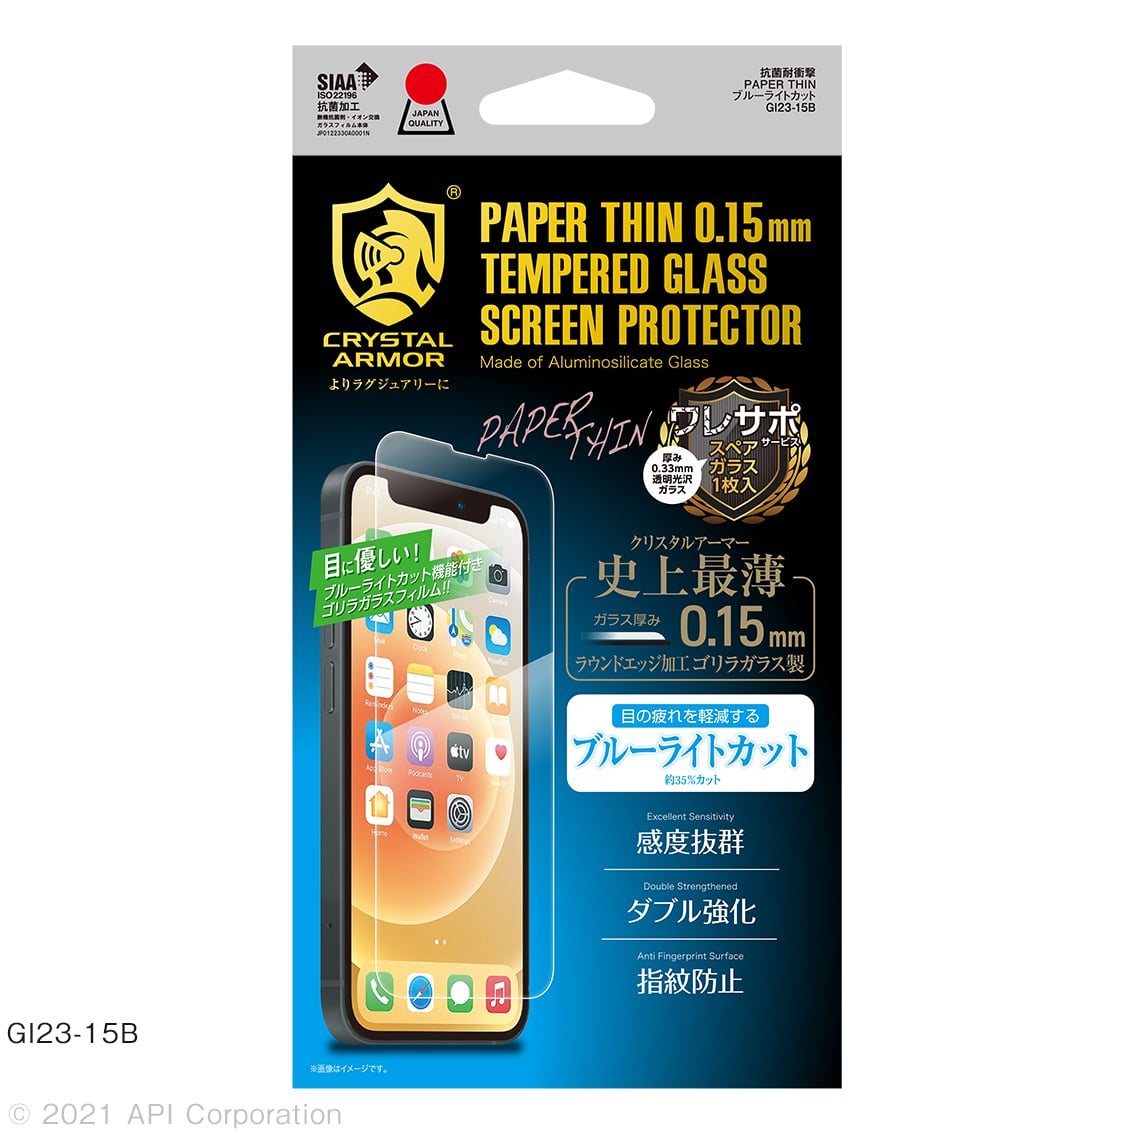 新型 iPhone13 mini 対応 超薄 0.15mm ガラスフィルム クリア ブルーライトカット 覗き見防止 iPhone 2021年モデル 5.4インチ